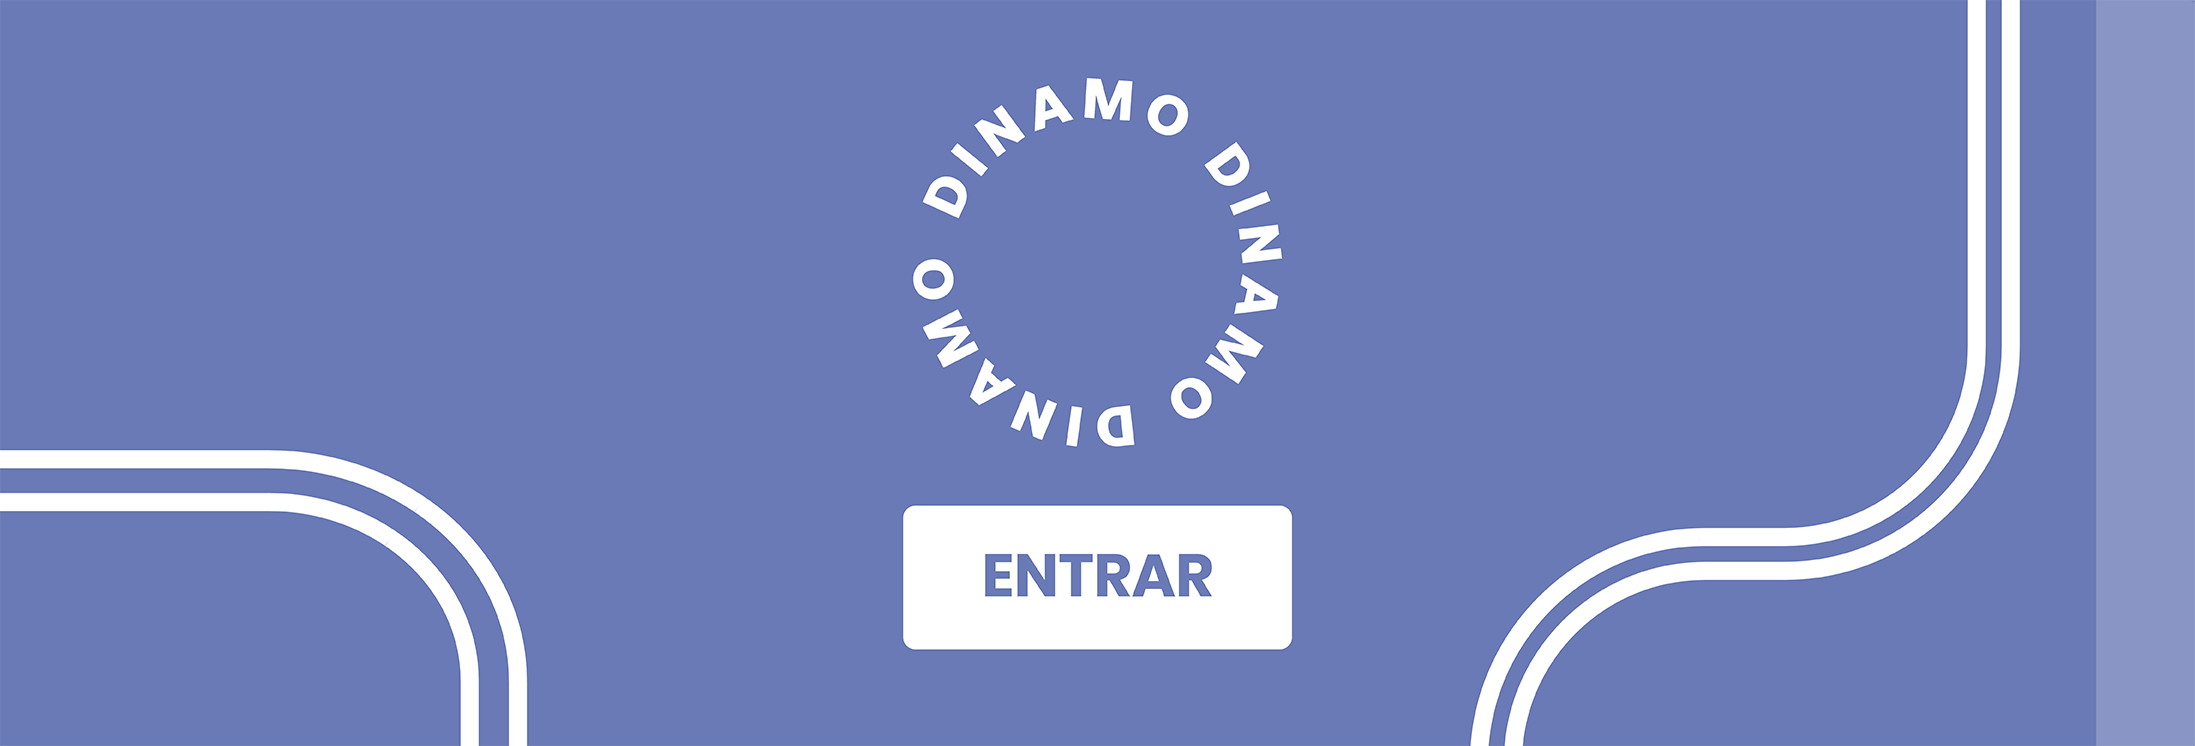 ENTRADA DINAMO-01